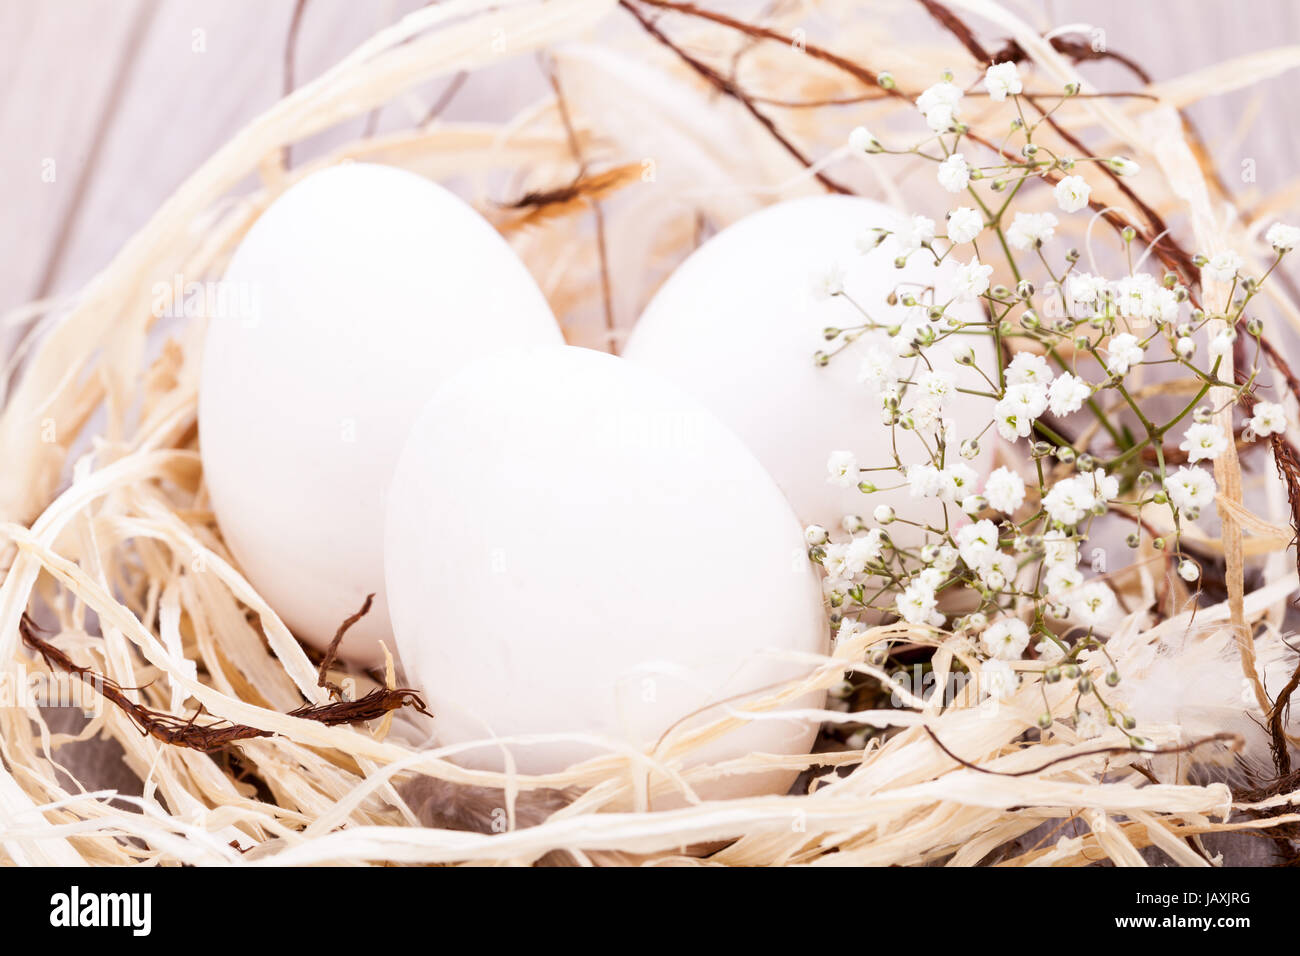 Weisse eier mit blüten im nest aus stroh ostern dekoration ostereier Banque D'Images